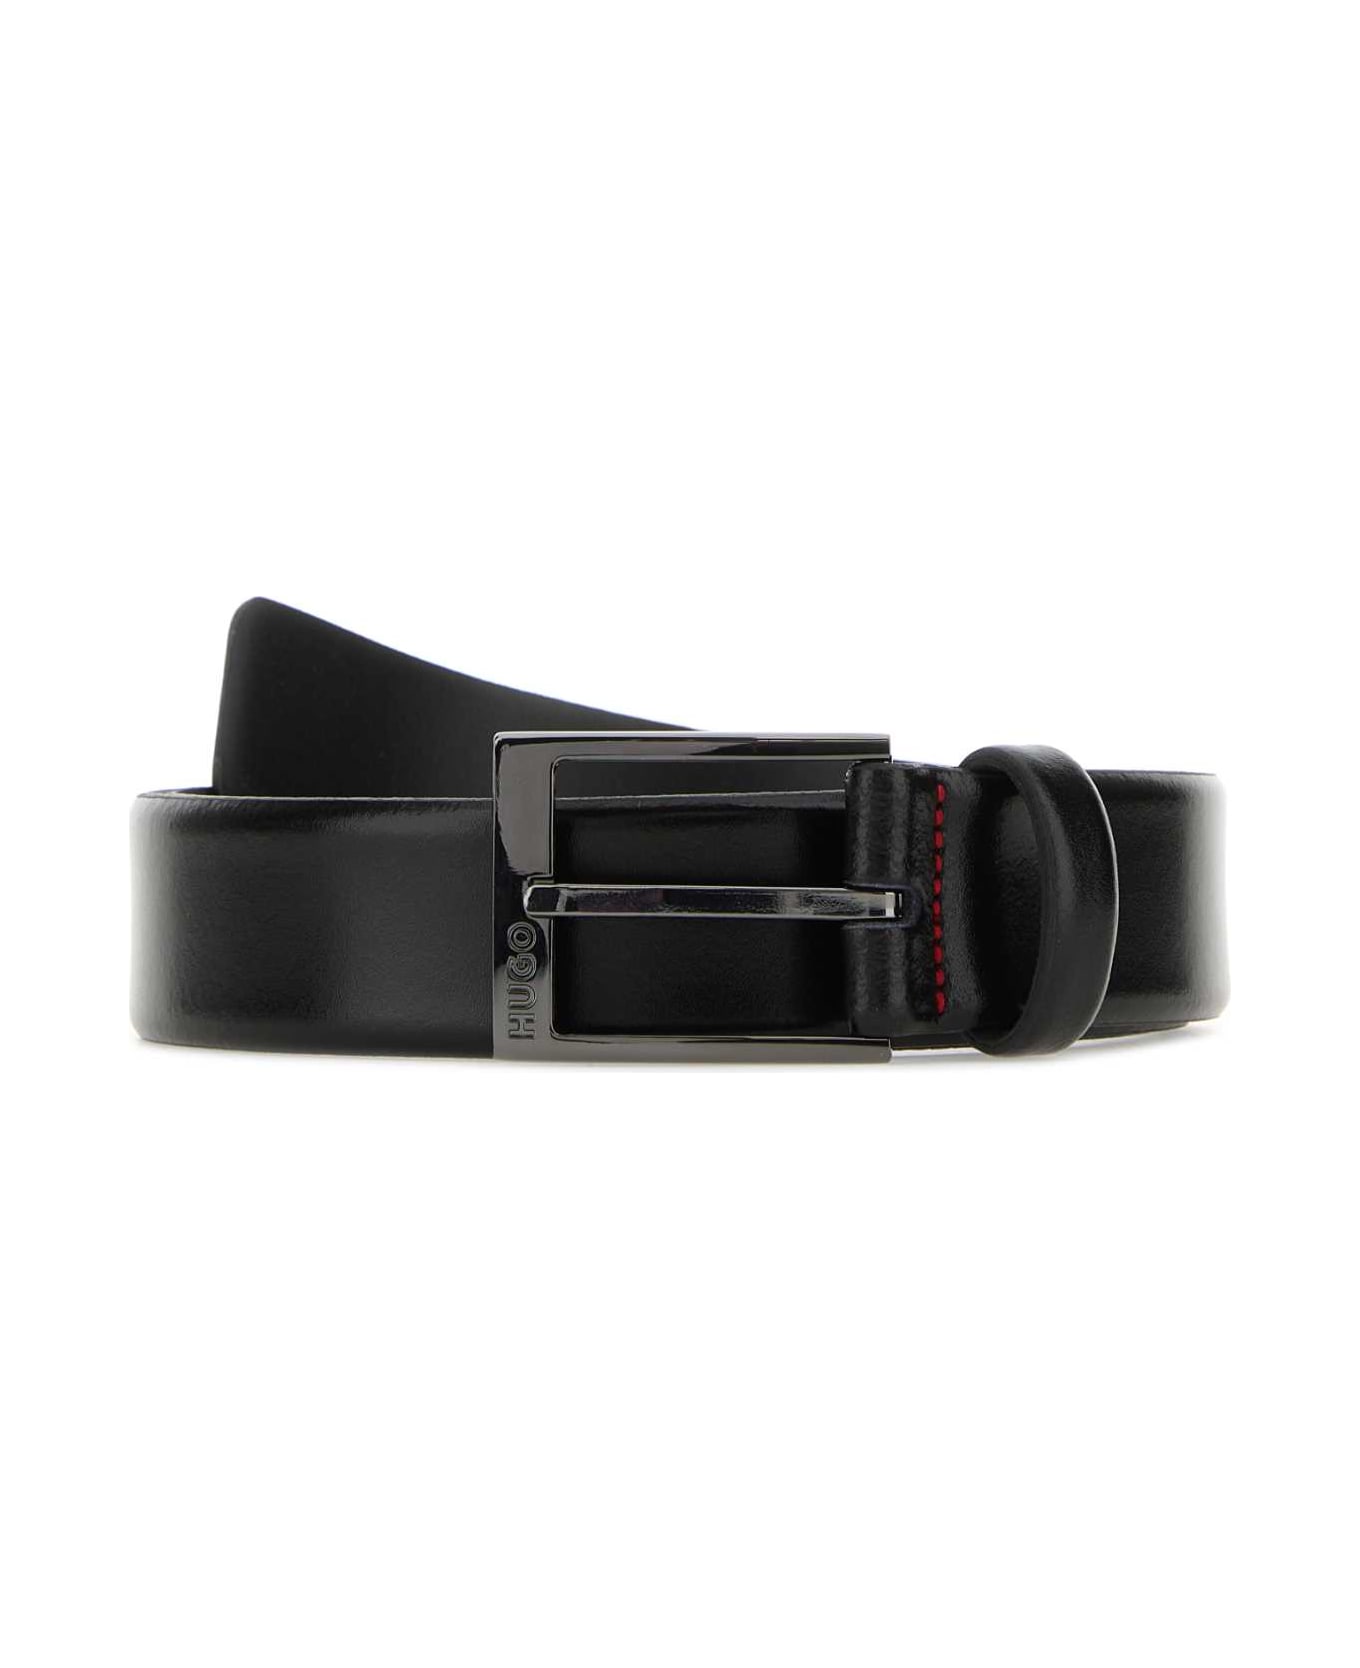 Hugo Boss Black Leather Belt - 001 ベルト